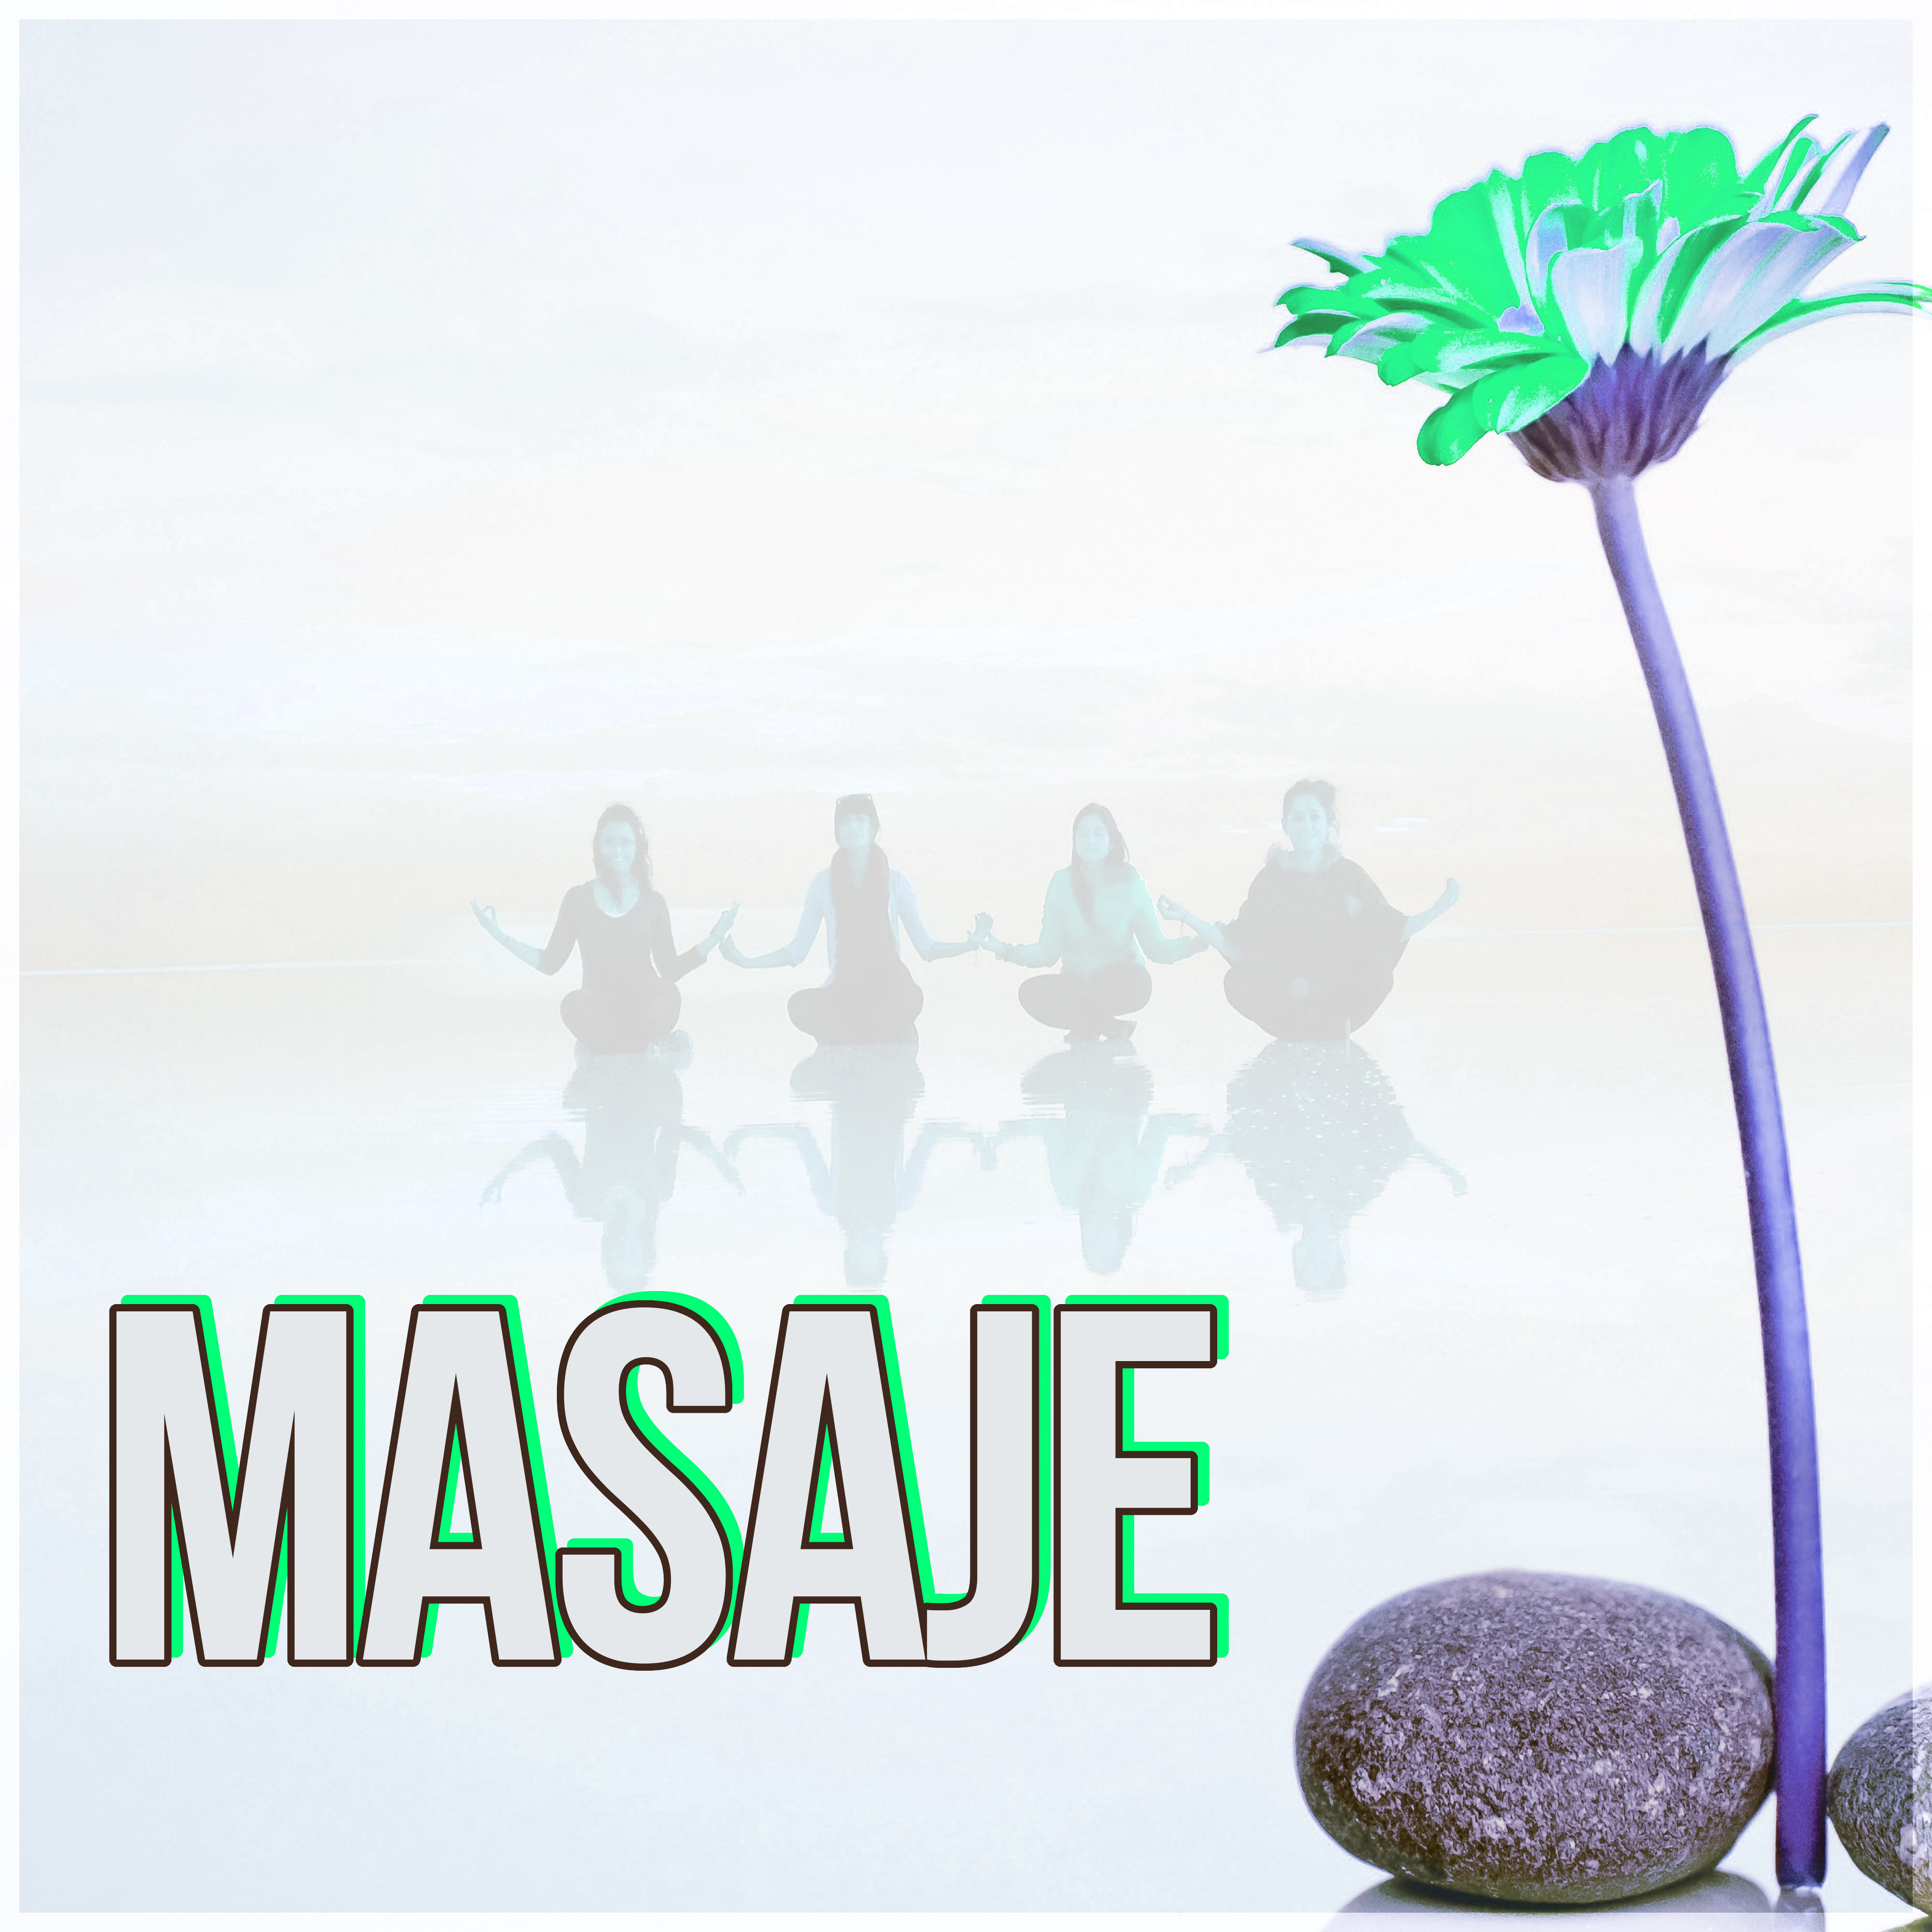 Masaje - Música New Age, Relajación, Shiatsu, Meditar, Naturaleza, Masoterapia, Sonidos del Mar para Dormir, Wellness